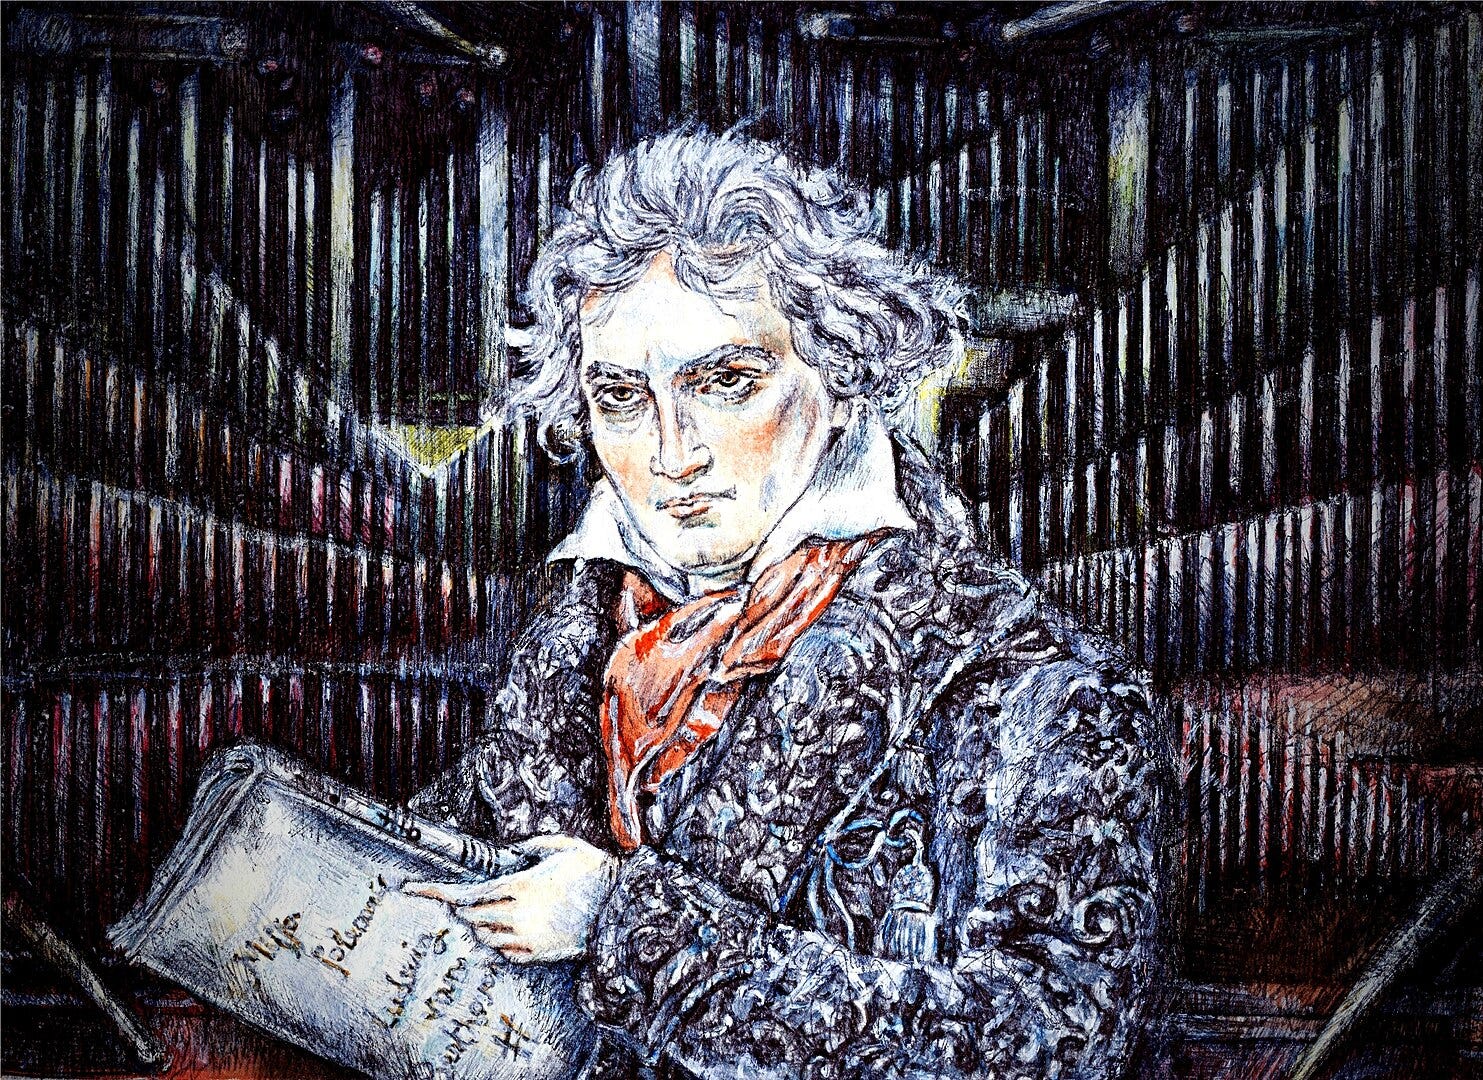 Beethovens symfonier